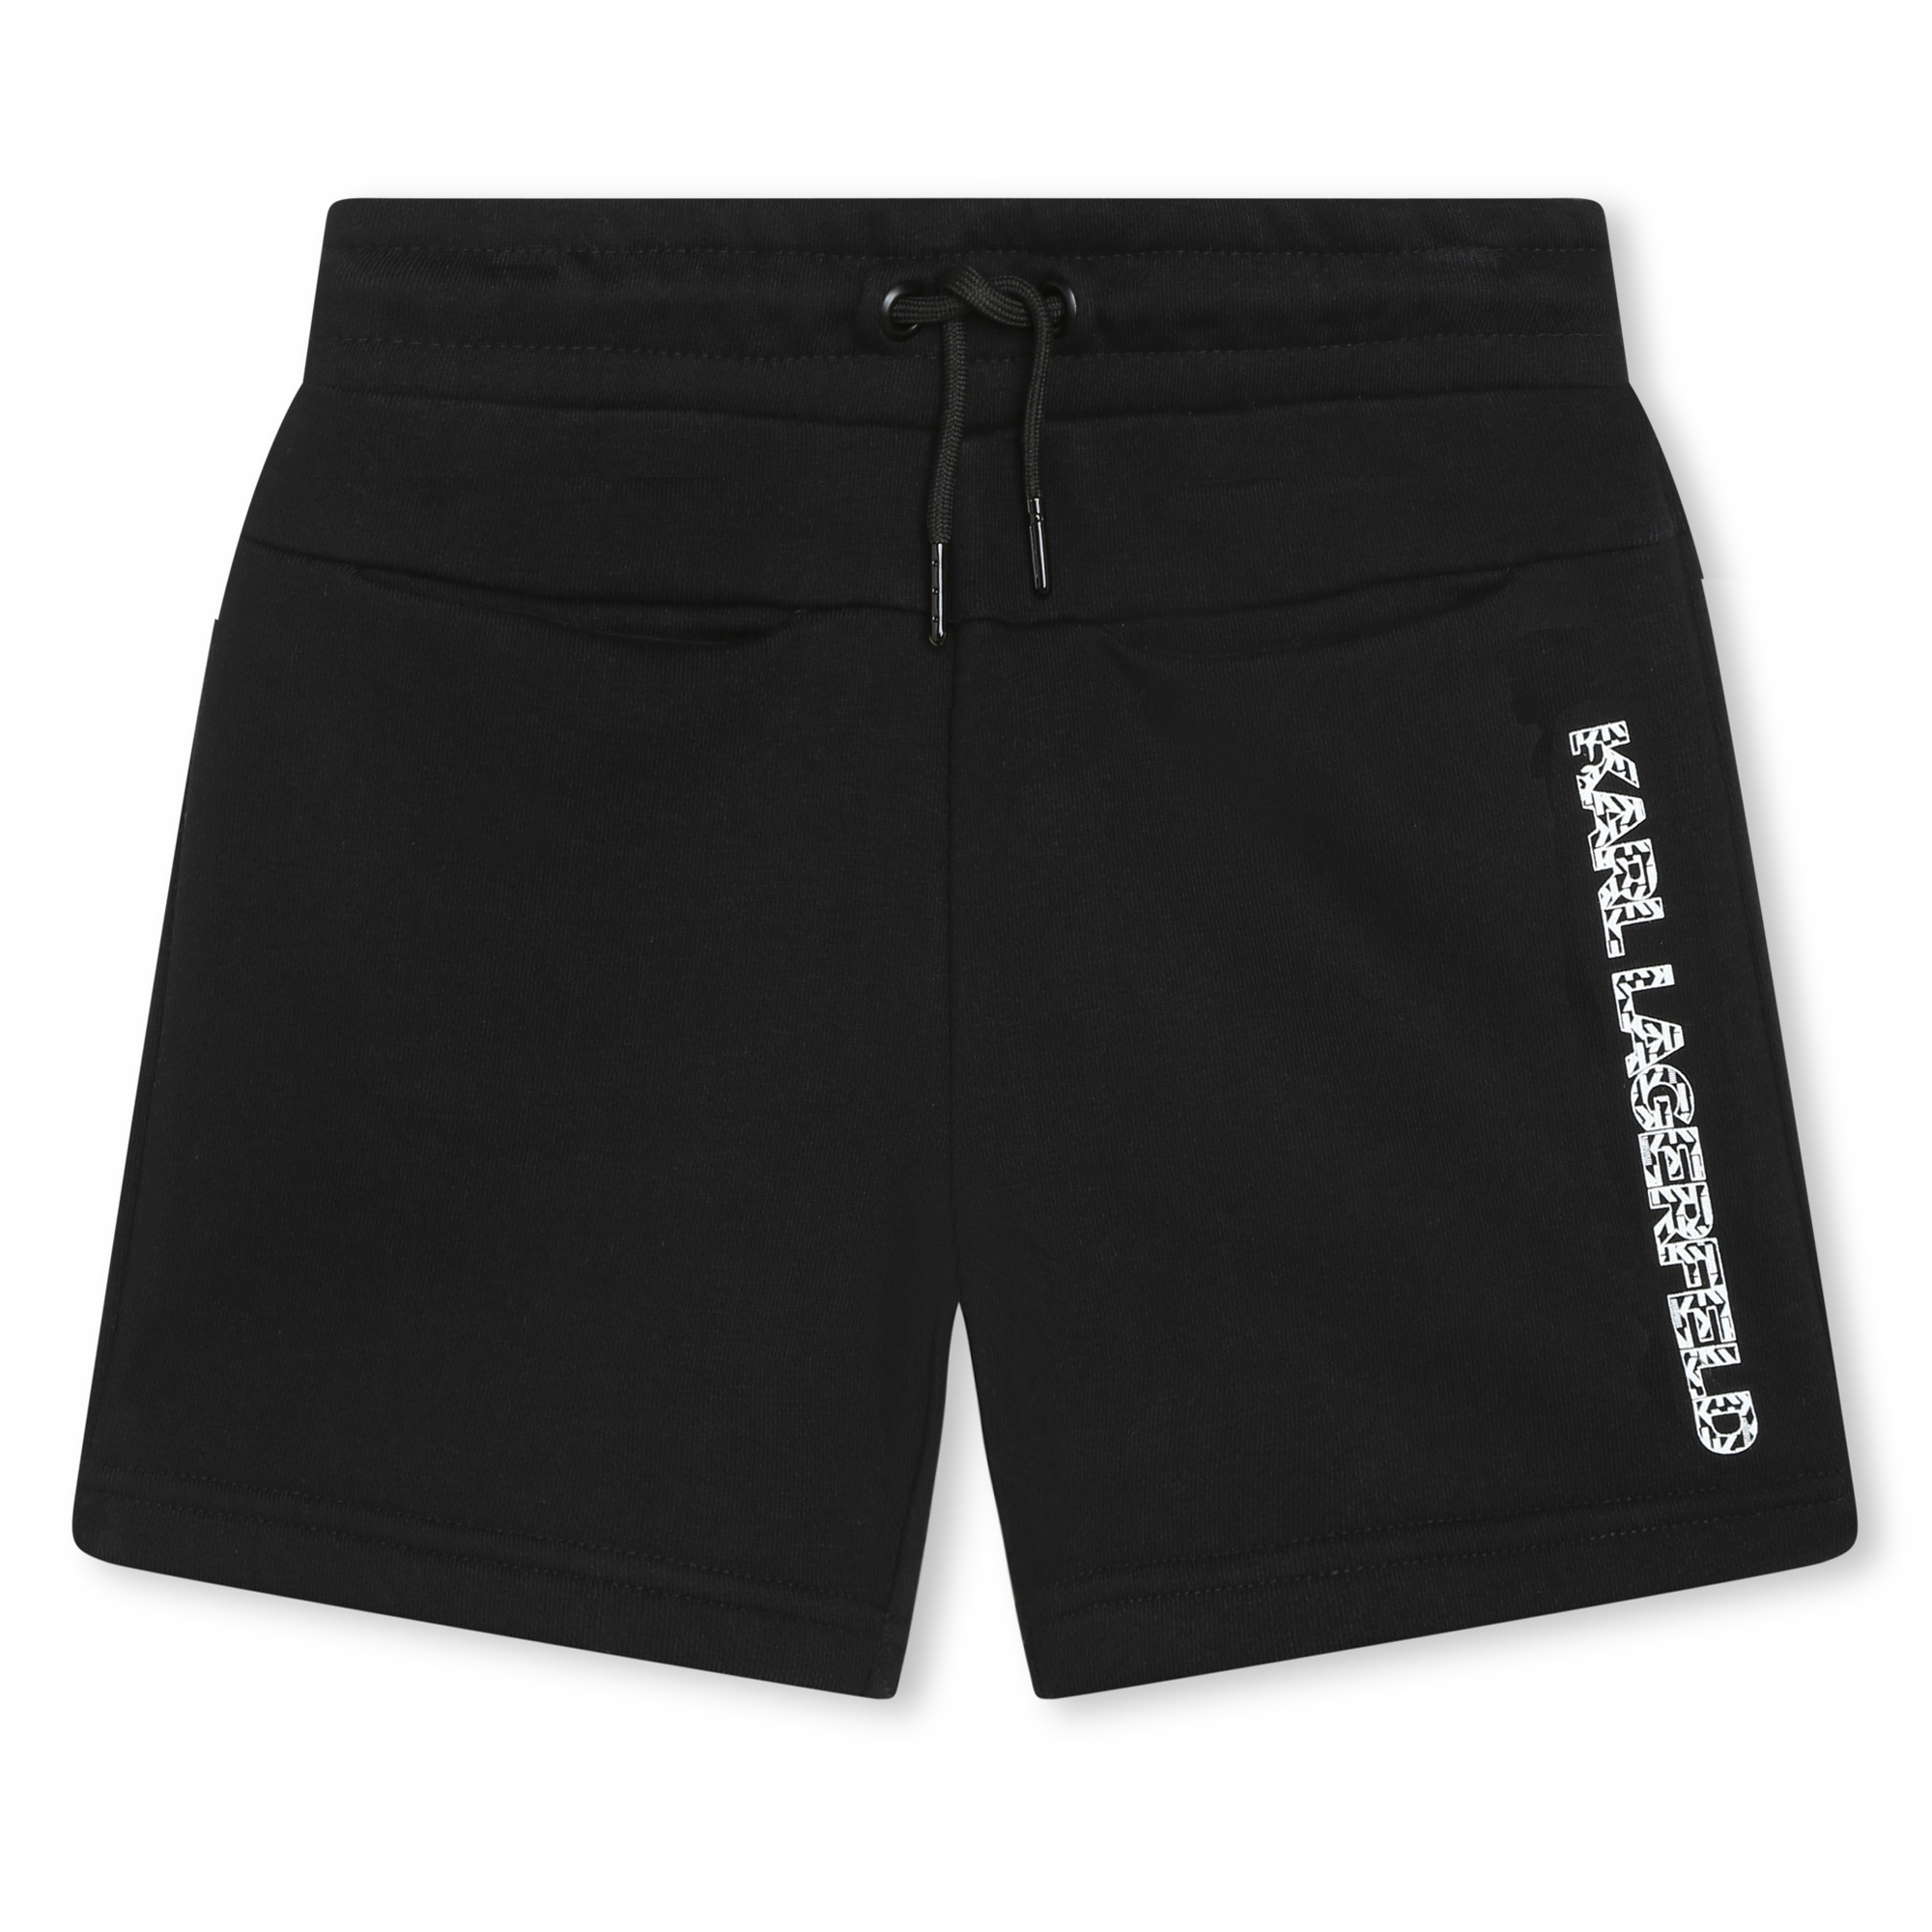 Bermuda-Shorts aus Molton KARL LAGERFELD KIDS Für JUNGE